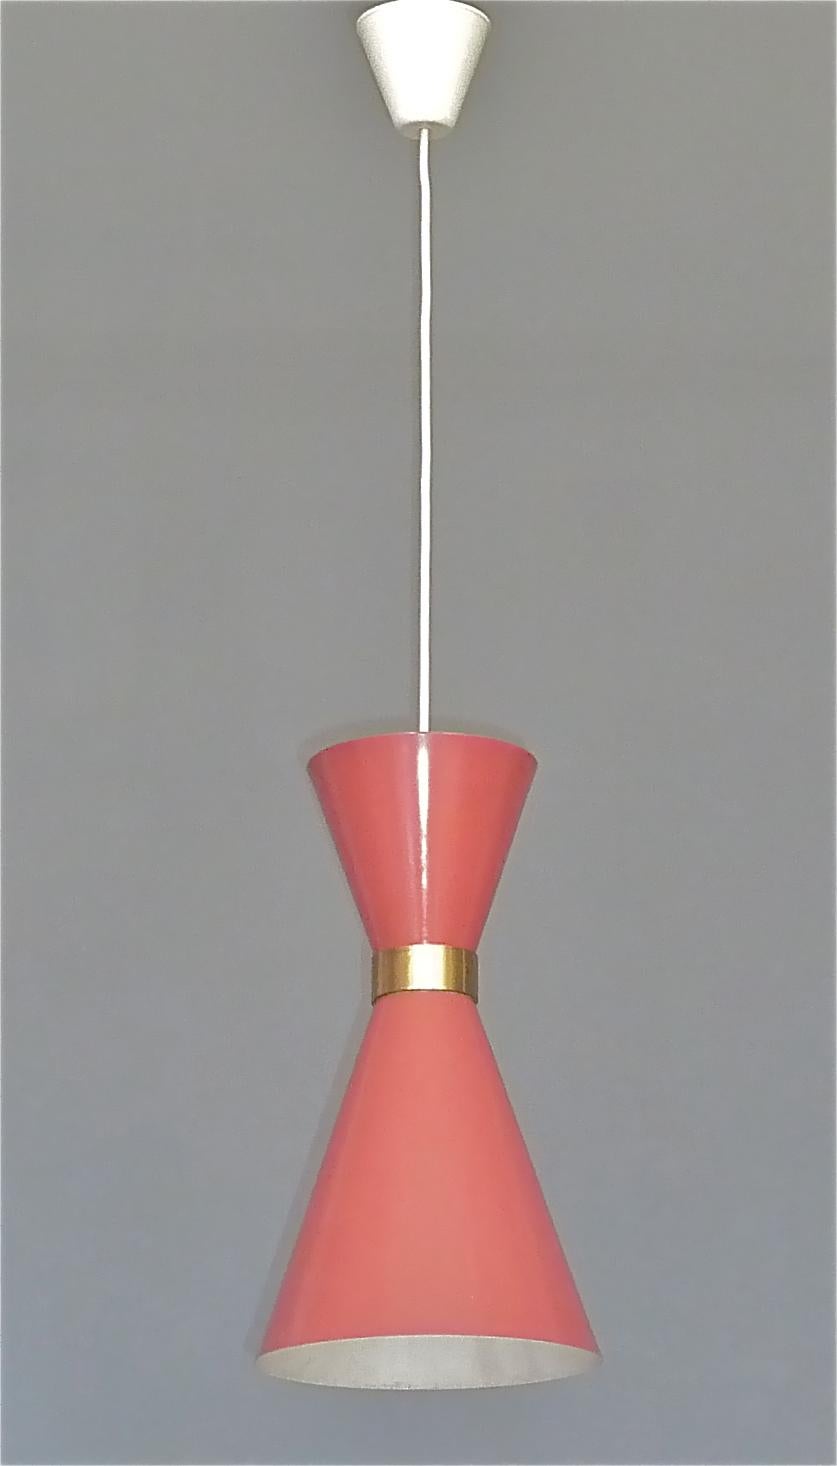 Midcentury Carl Moor BAG Turgi Pendant Lamp Diabolo Red Stilnovo Style 1950s For Sale 5